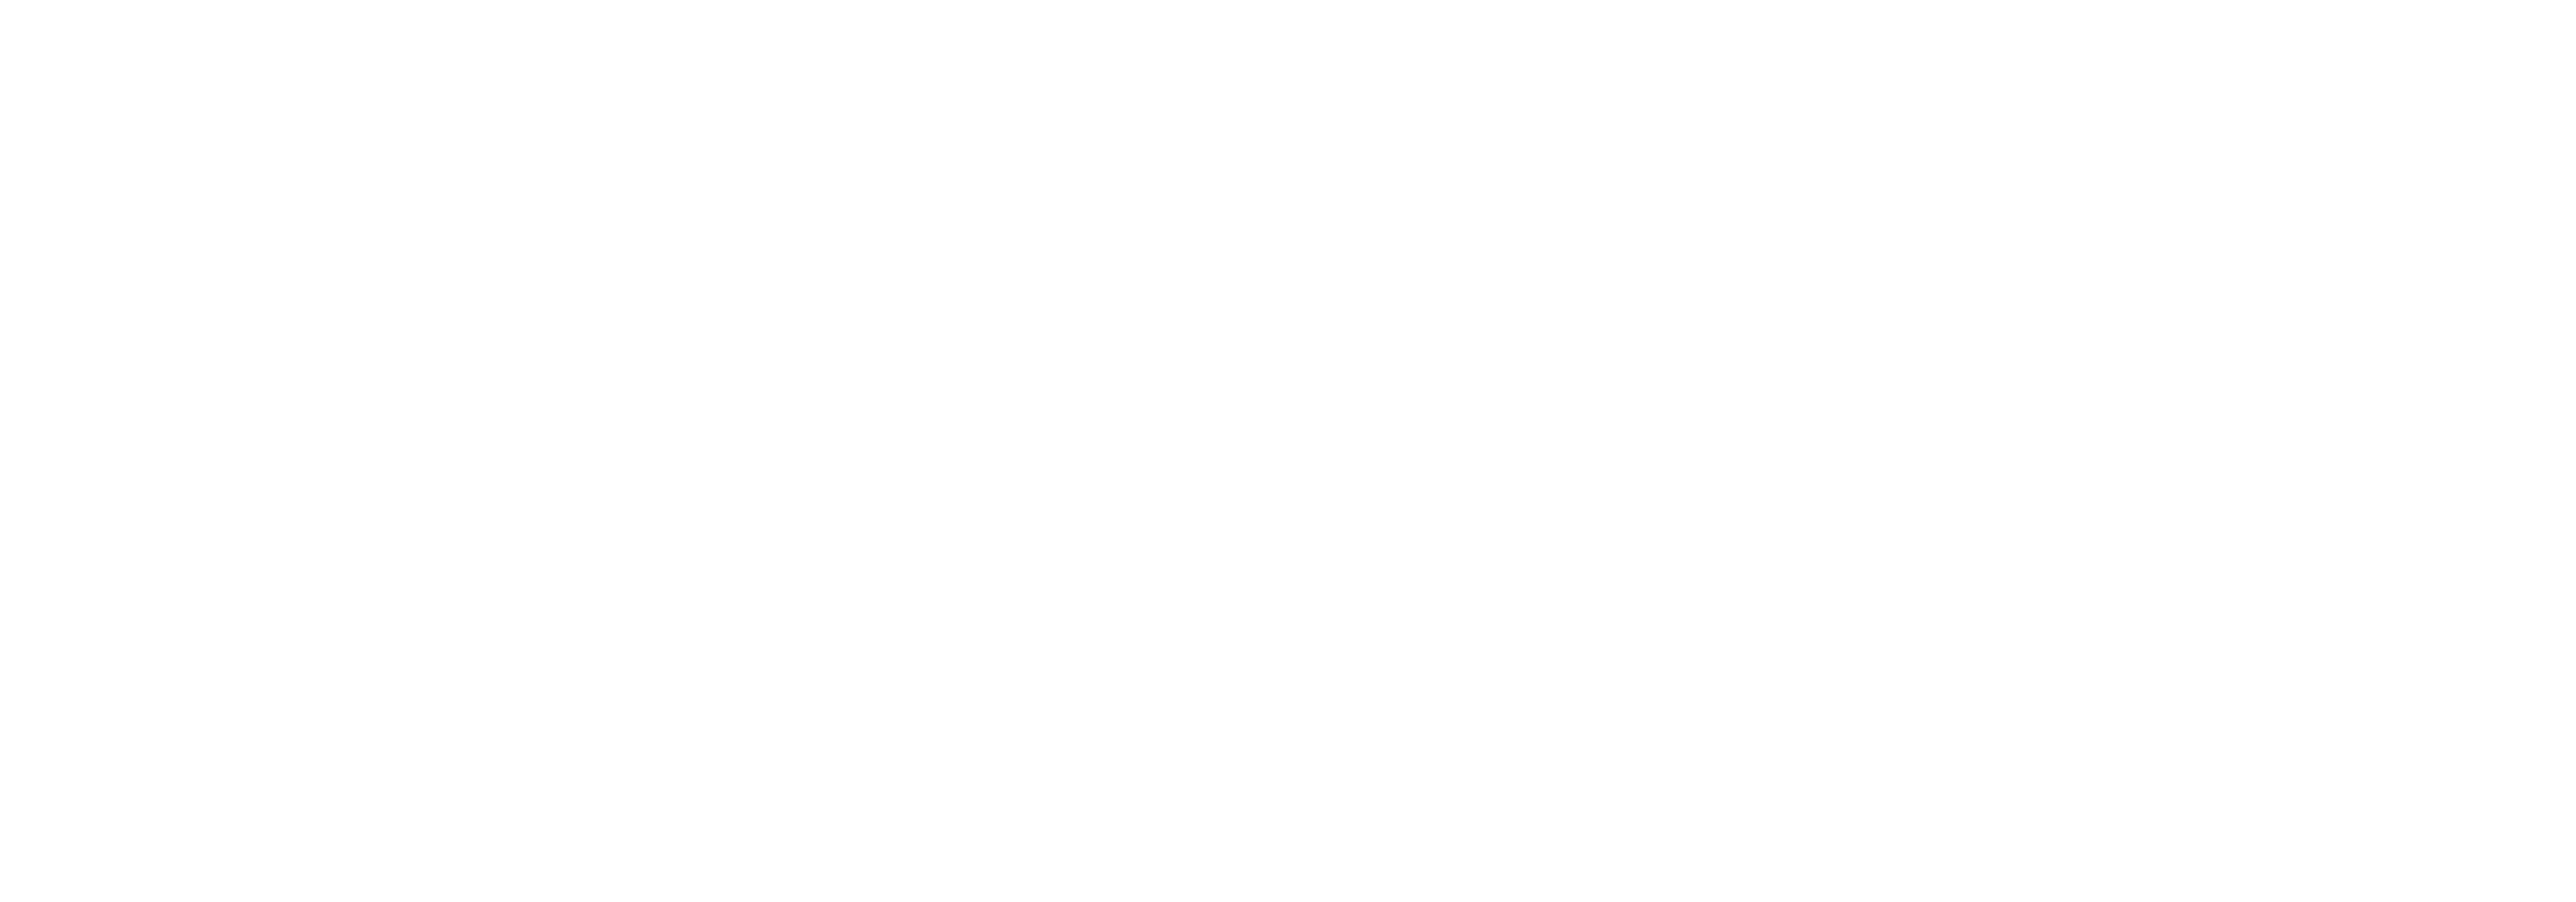 Wolfenstein: Youngblood logo